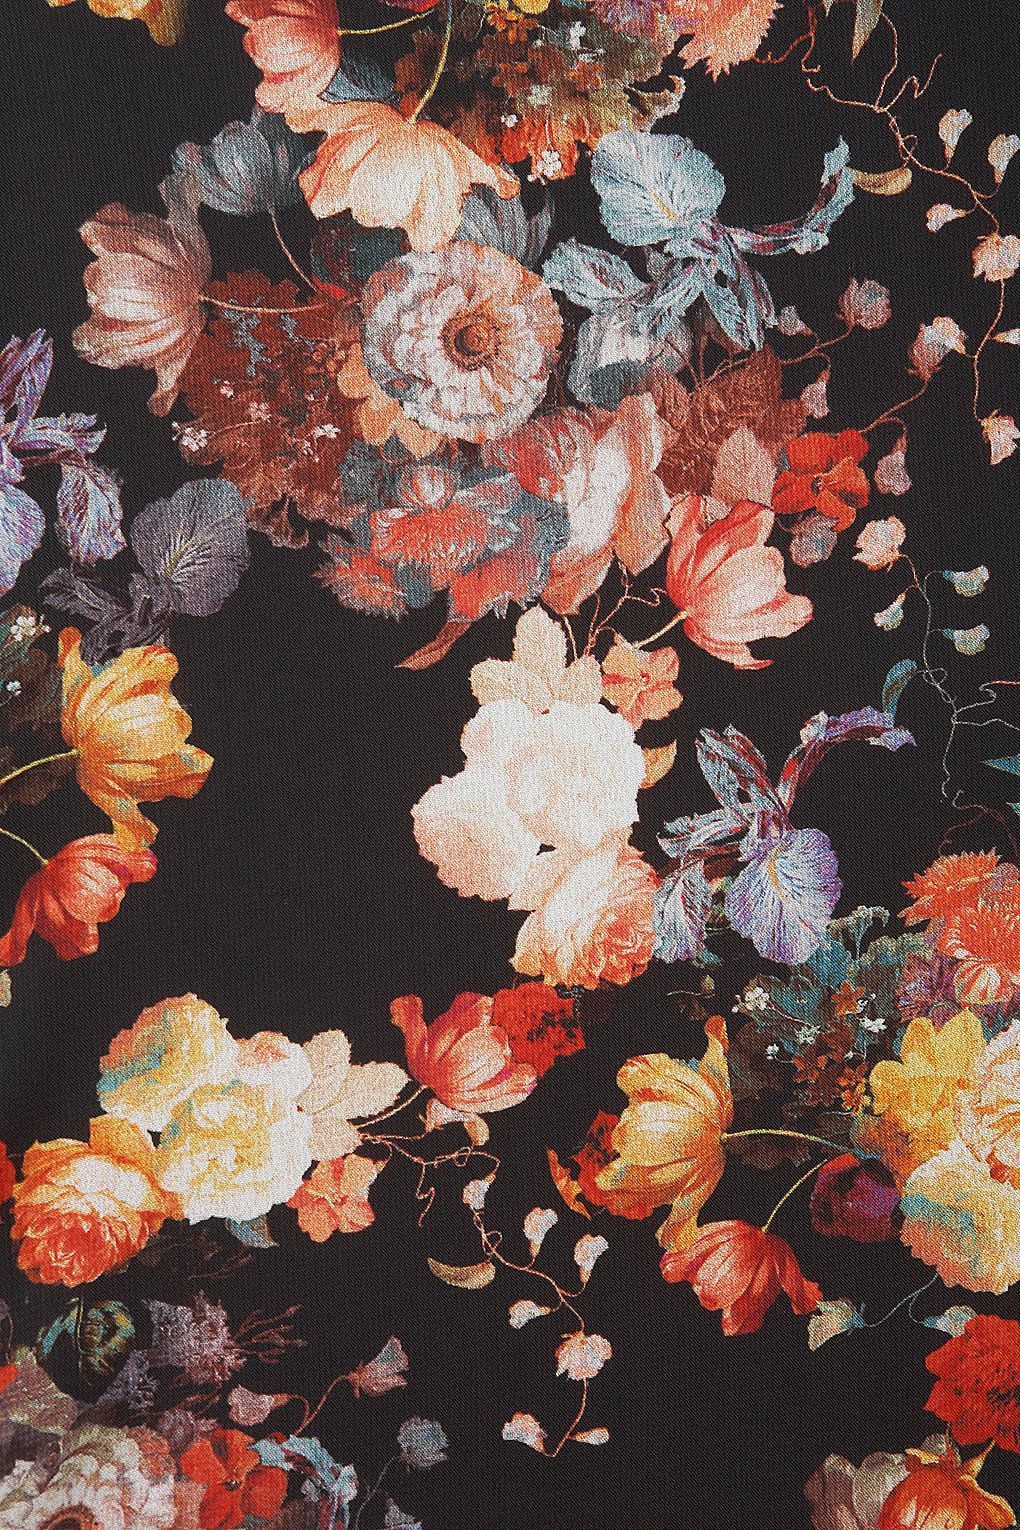 vintage flower iphone wallpapers